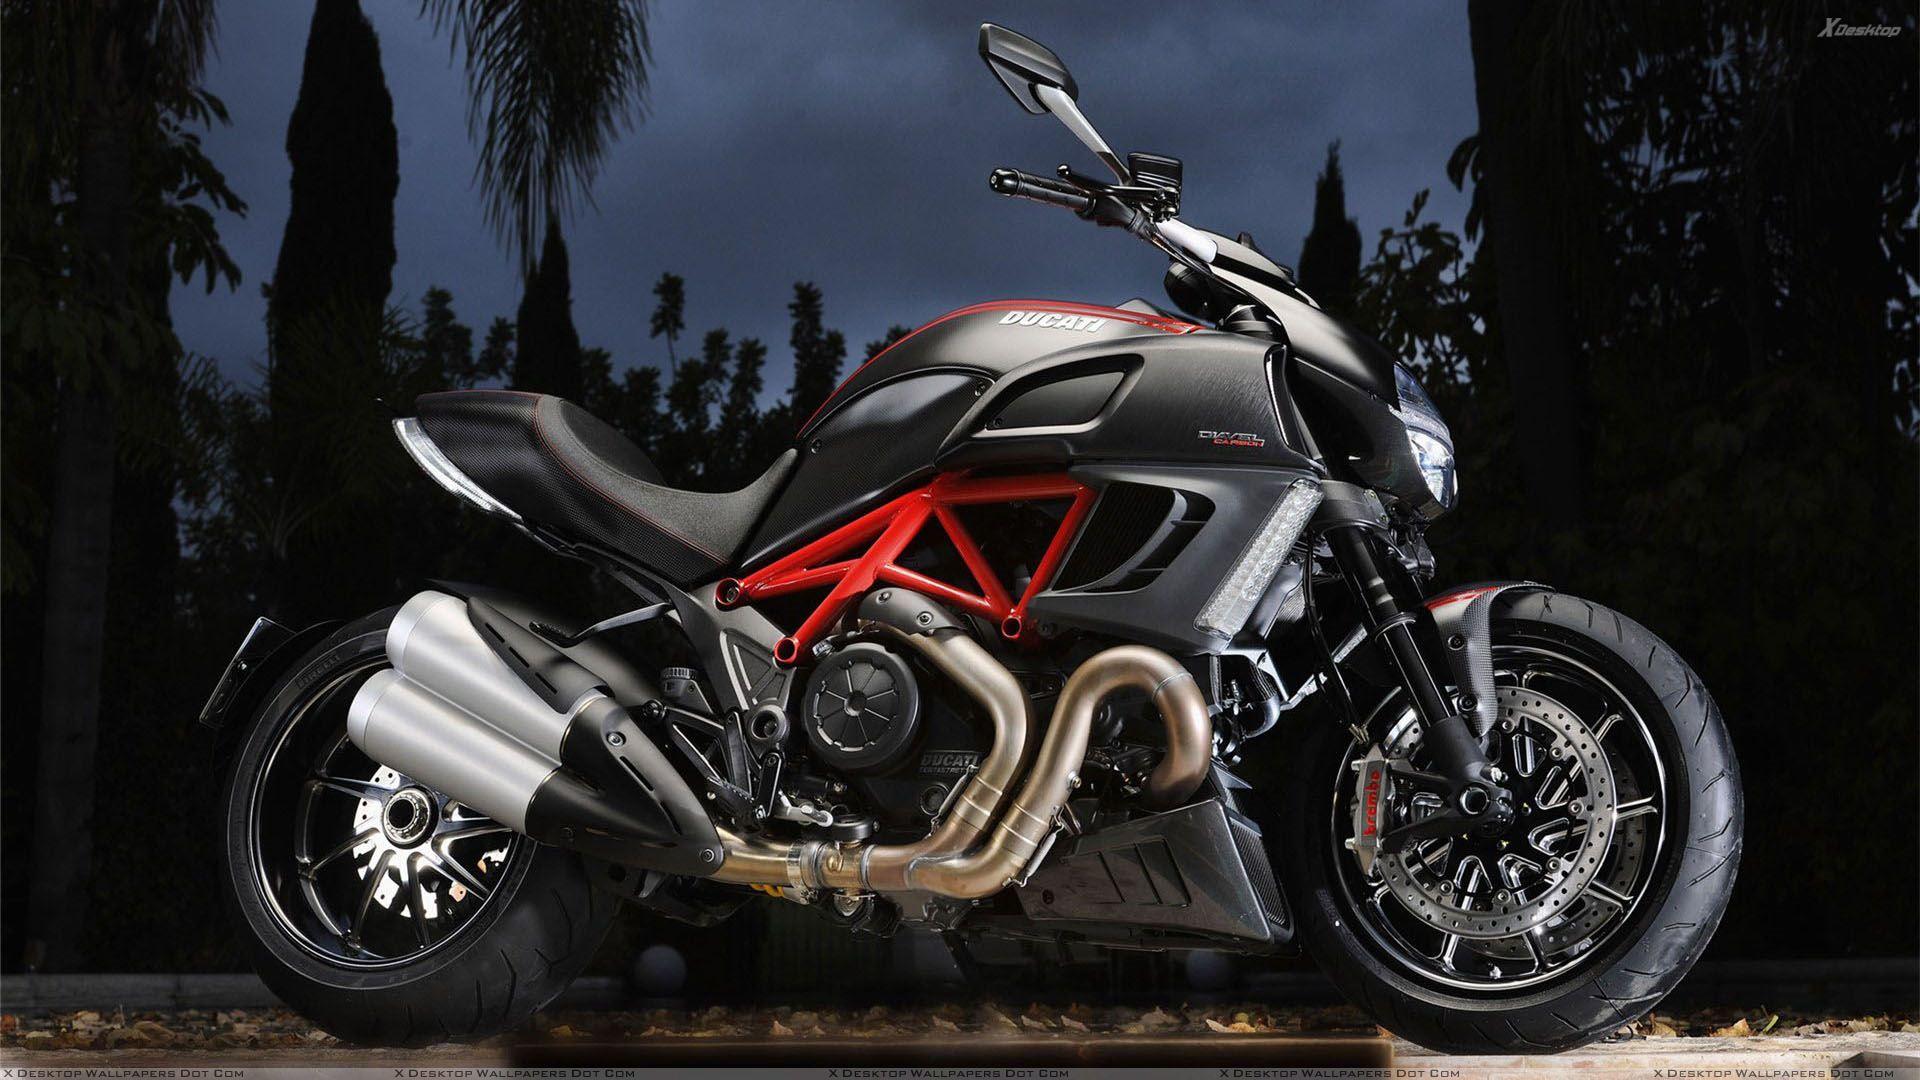 Ducati Diavel Wallpaper, Photo & Image in HD